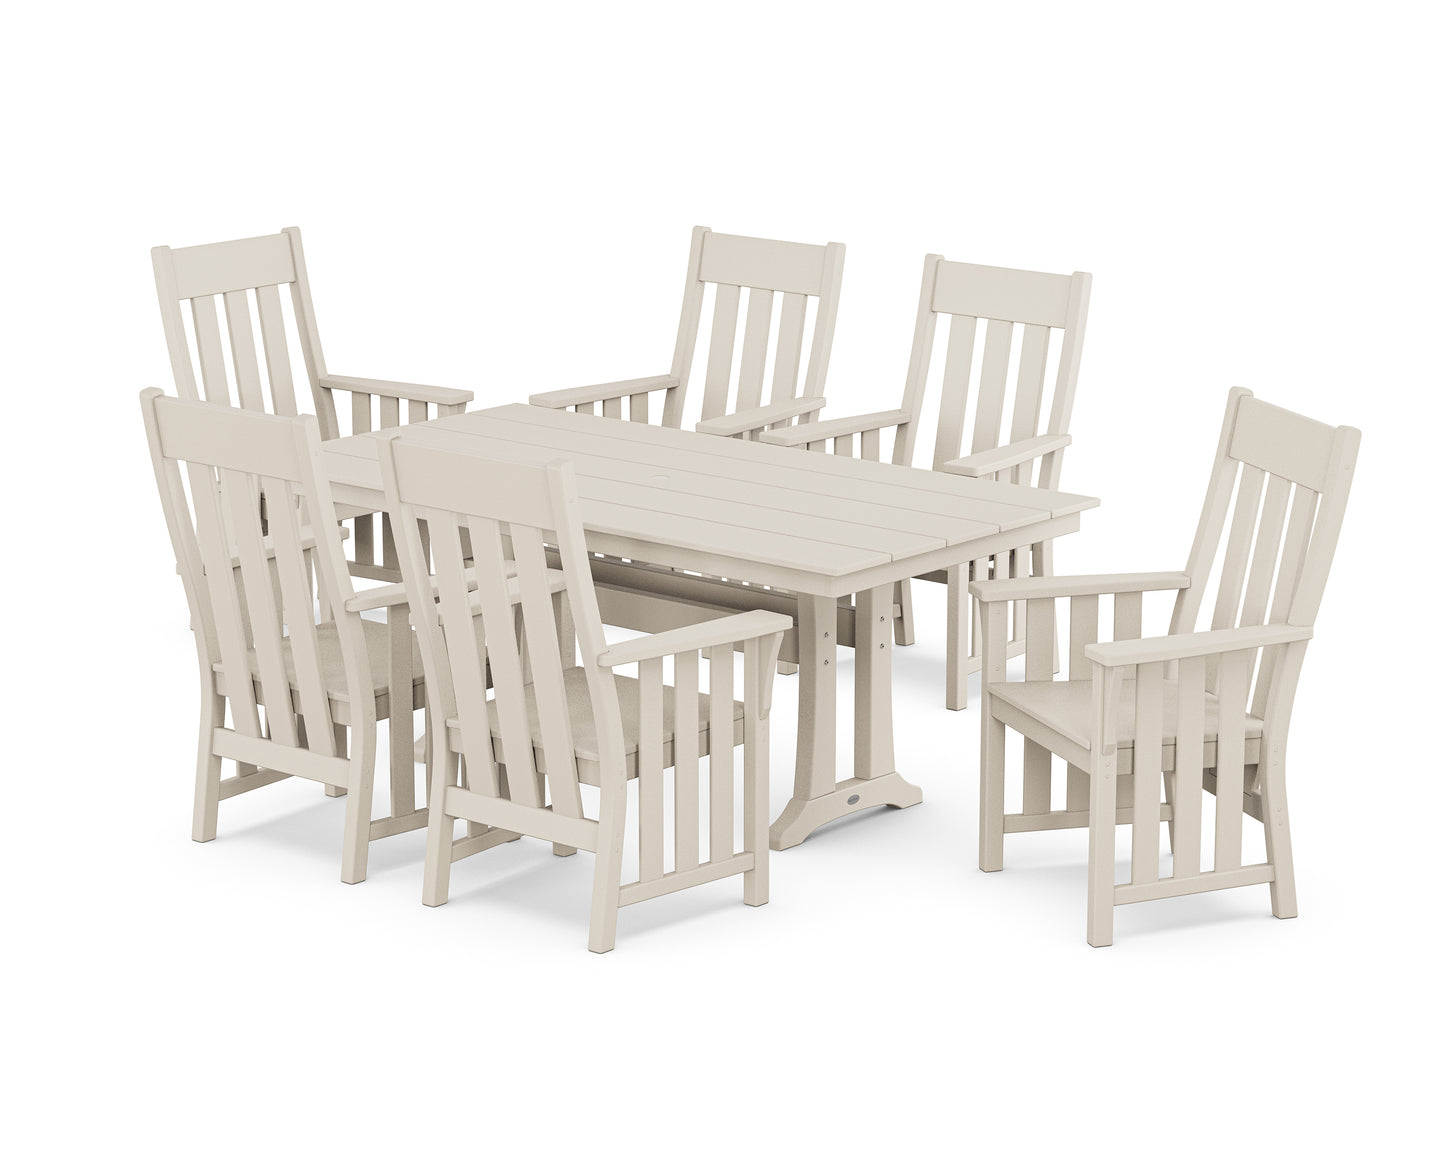 Acadia Arm Chair 7-Piece Farmhouse Dining Set with Trestle Legs